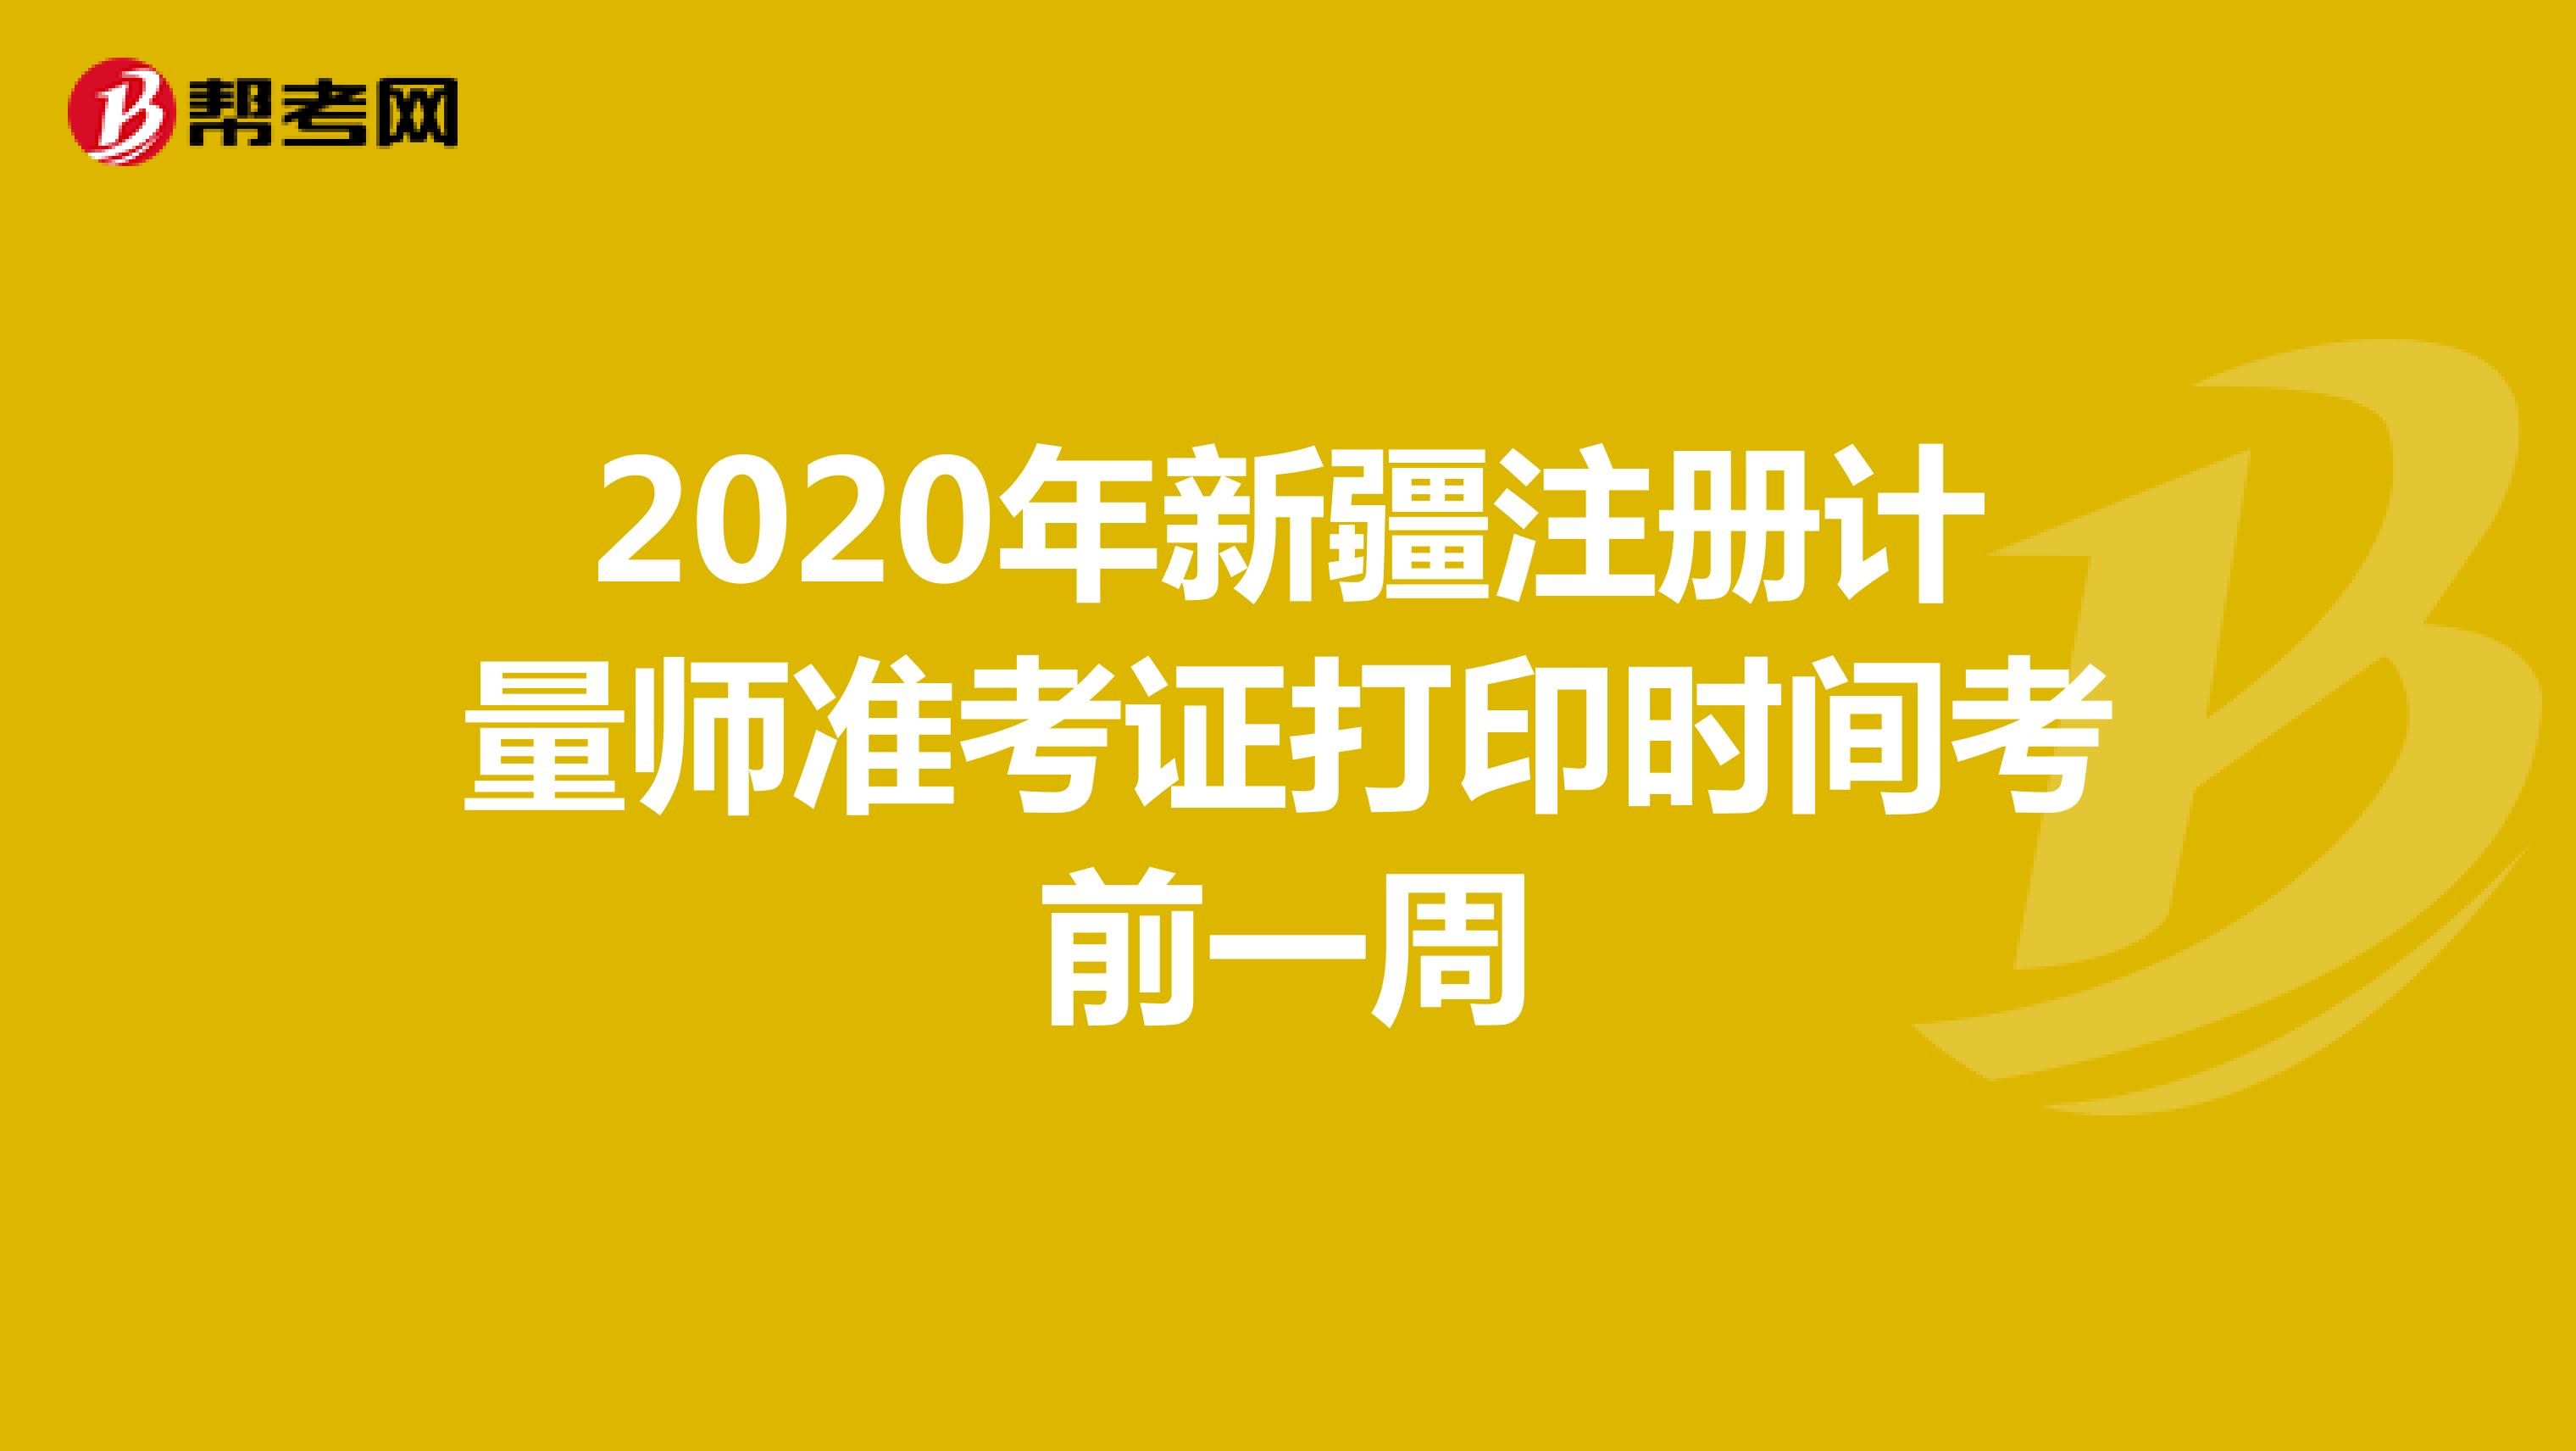 2020年新疆注册计量师准考证打印时间考前一周